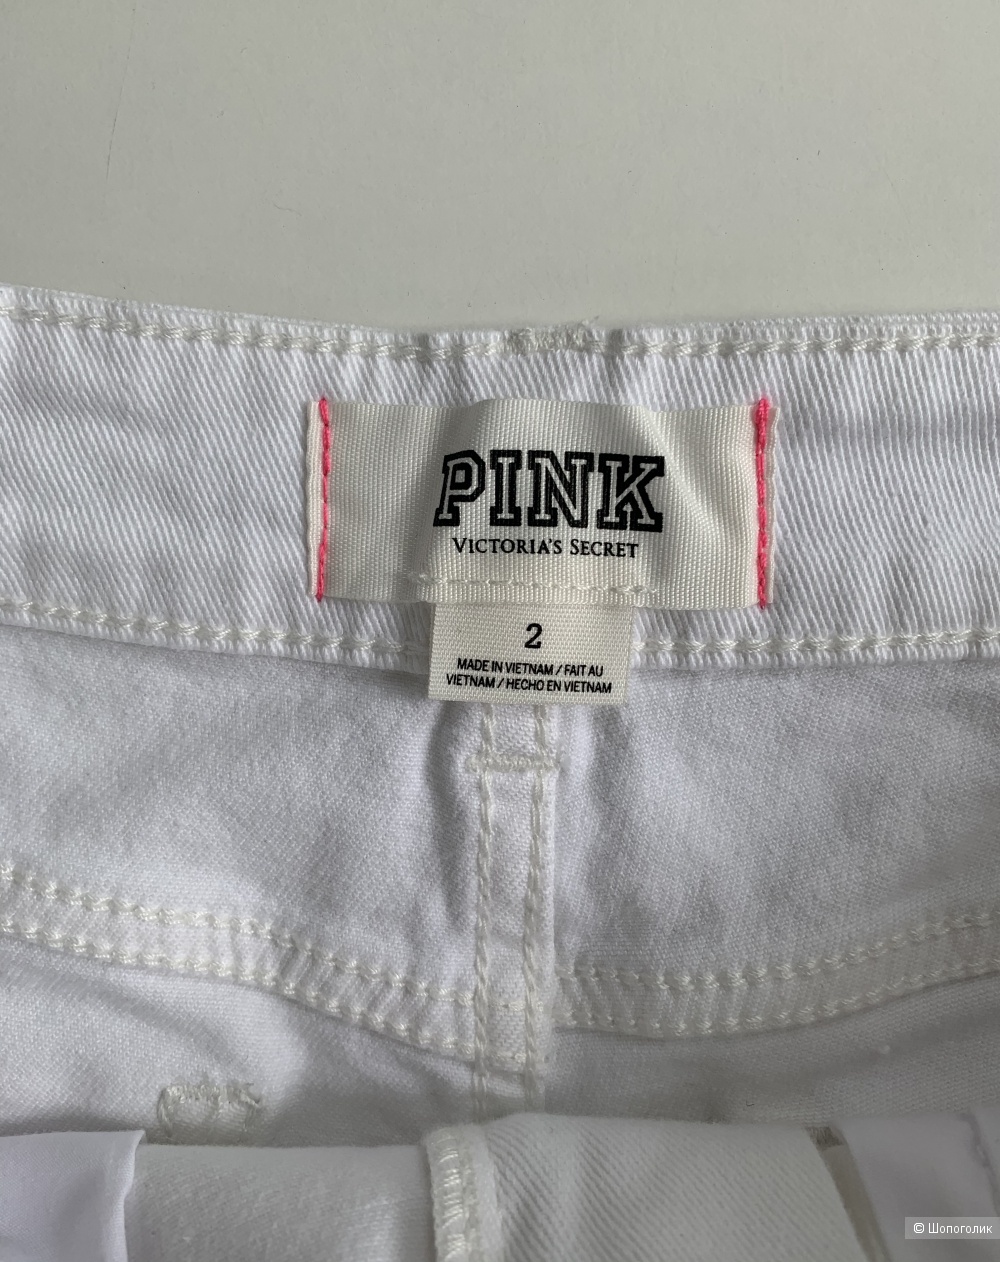 Джинсовые шорты Victoria’s Secret Pink, р. 2 us